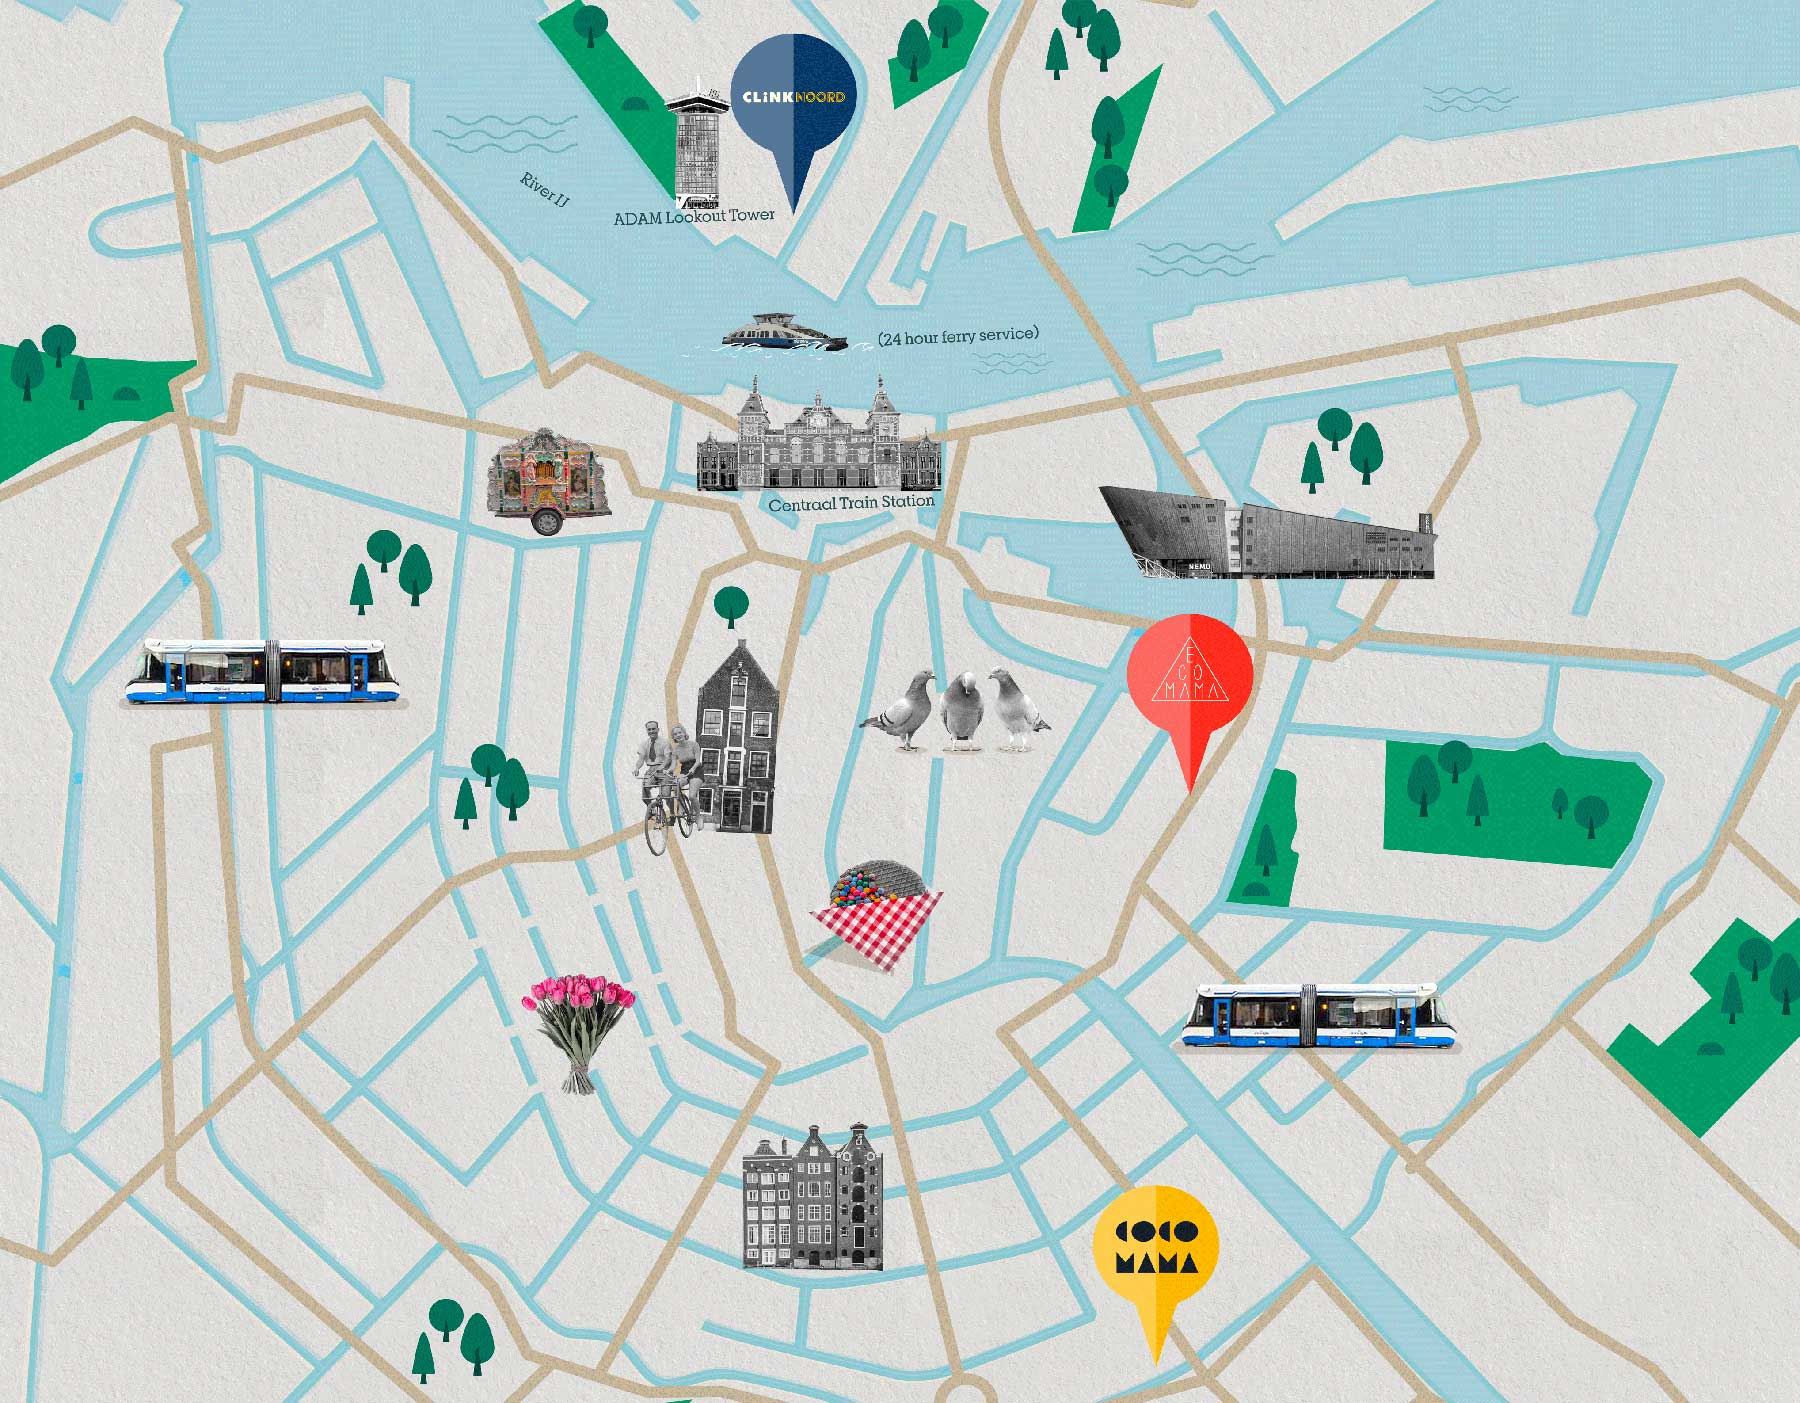 Stadtplan von Amsterdam mit ClinkNOORD, Ecomama, Cocomama und touristischen Attraktionen